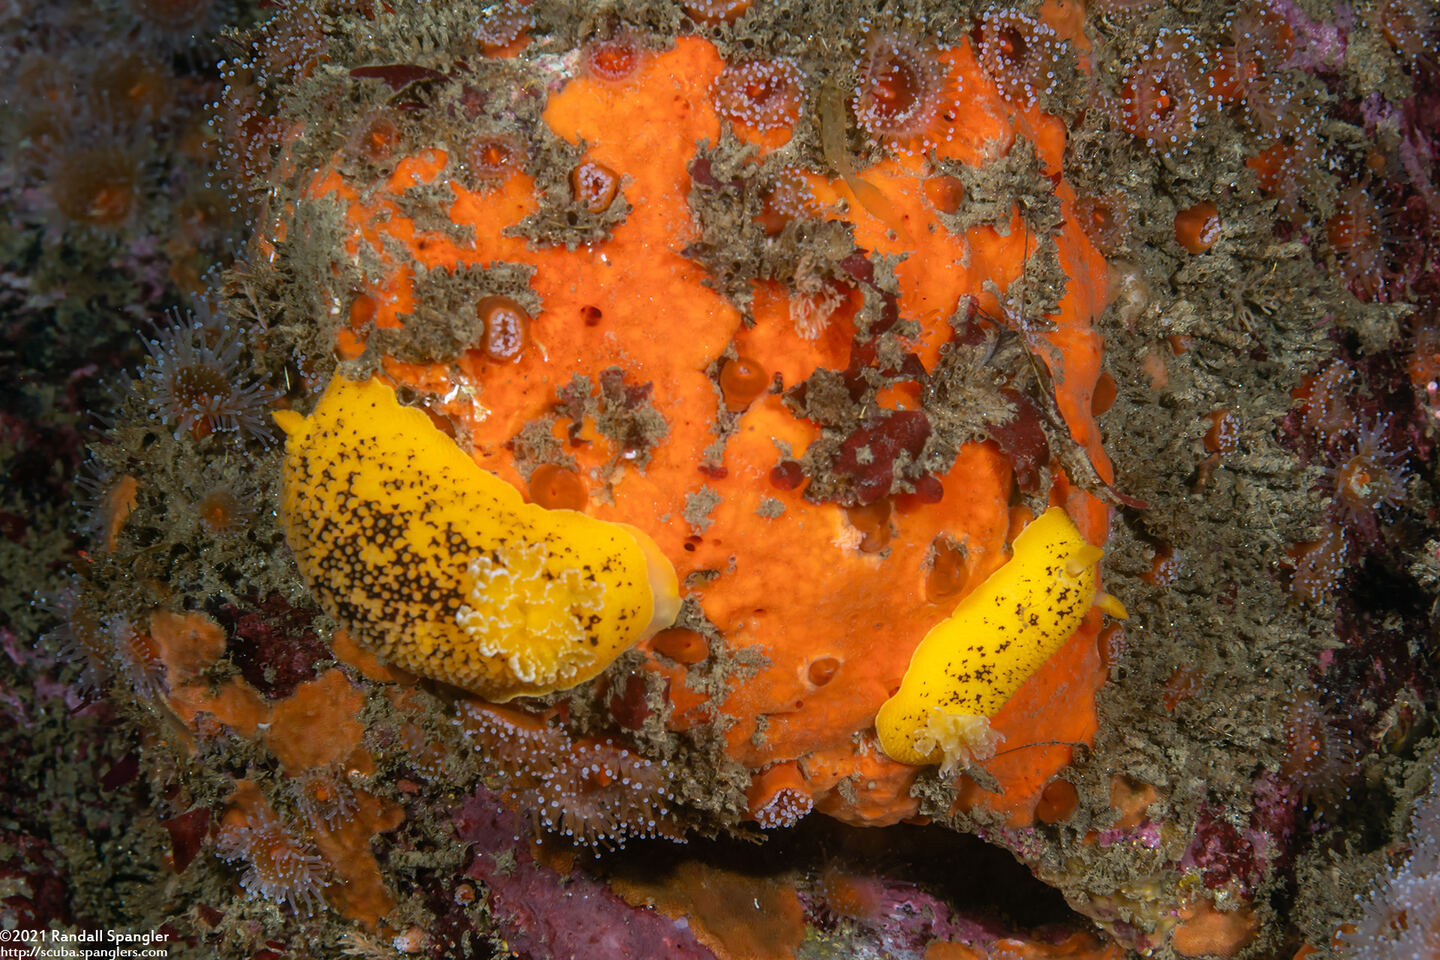 Peltodoris nobilis (Sea Lemon); Eating orange sponge